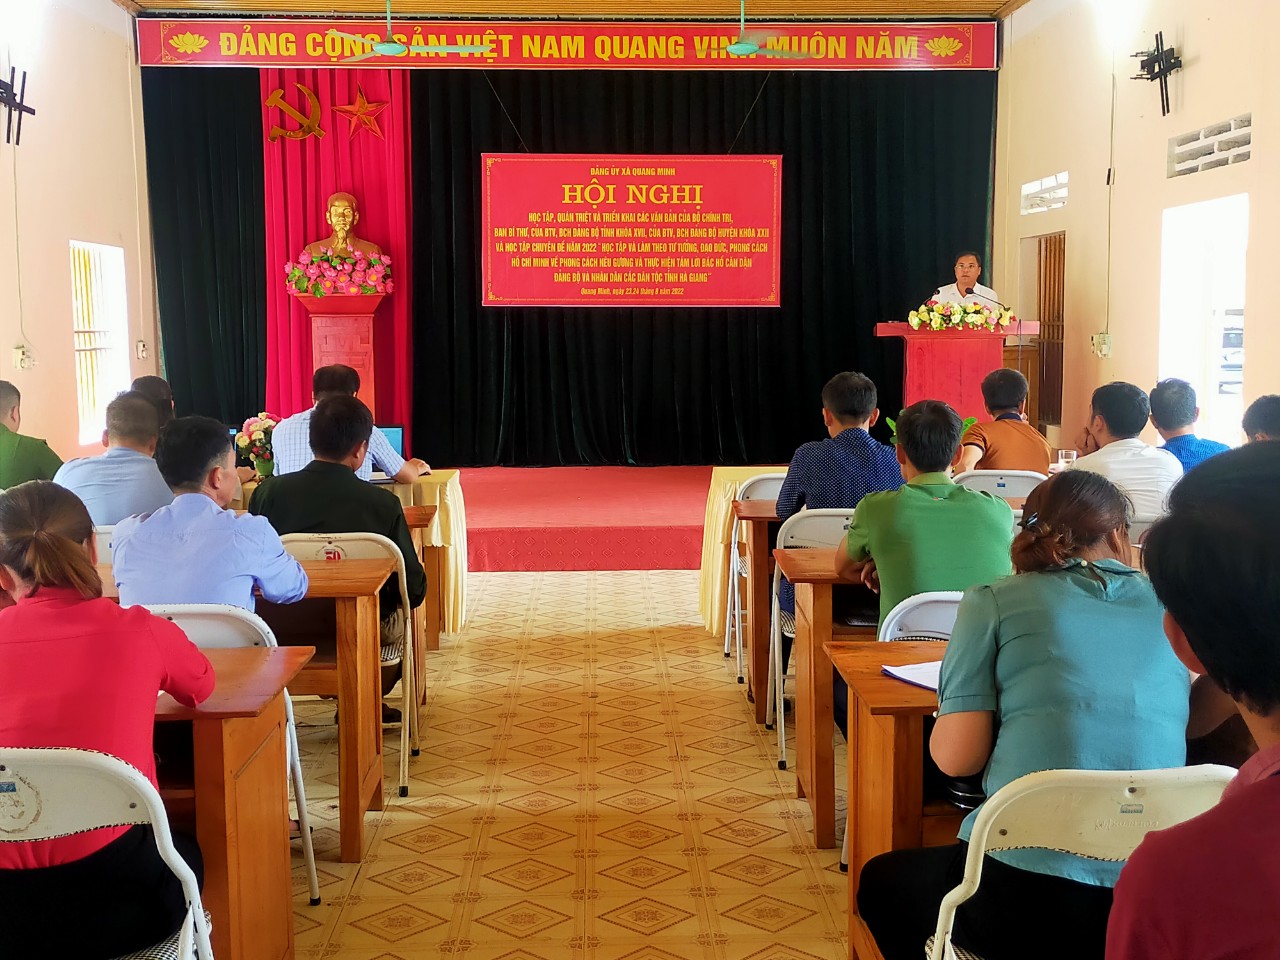 Đảng ủy xã Quang Minh tổ chức Hội nghị quán triệt, truyền đạt các Văn bản của trung ương, của tỉnh, của huyện và triển khai chuyên đề “Học tập và làm theo tư tưởng, đạo đức, phong cách Hồ Chí Minh”